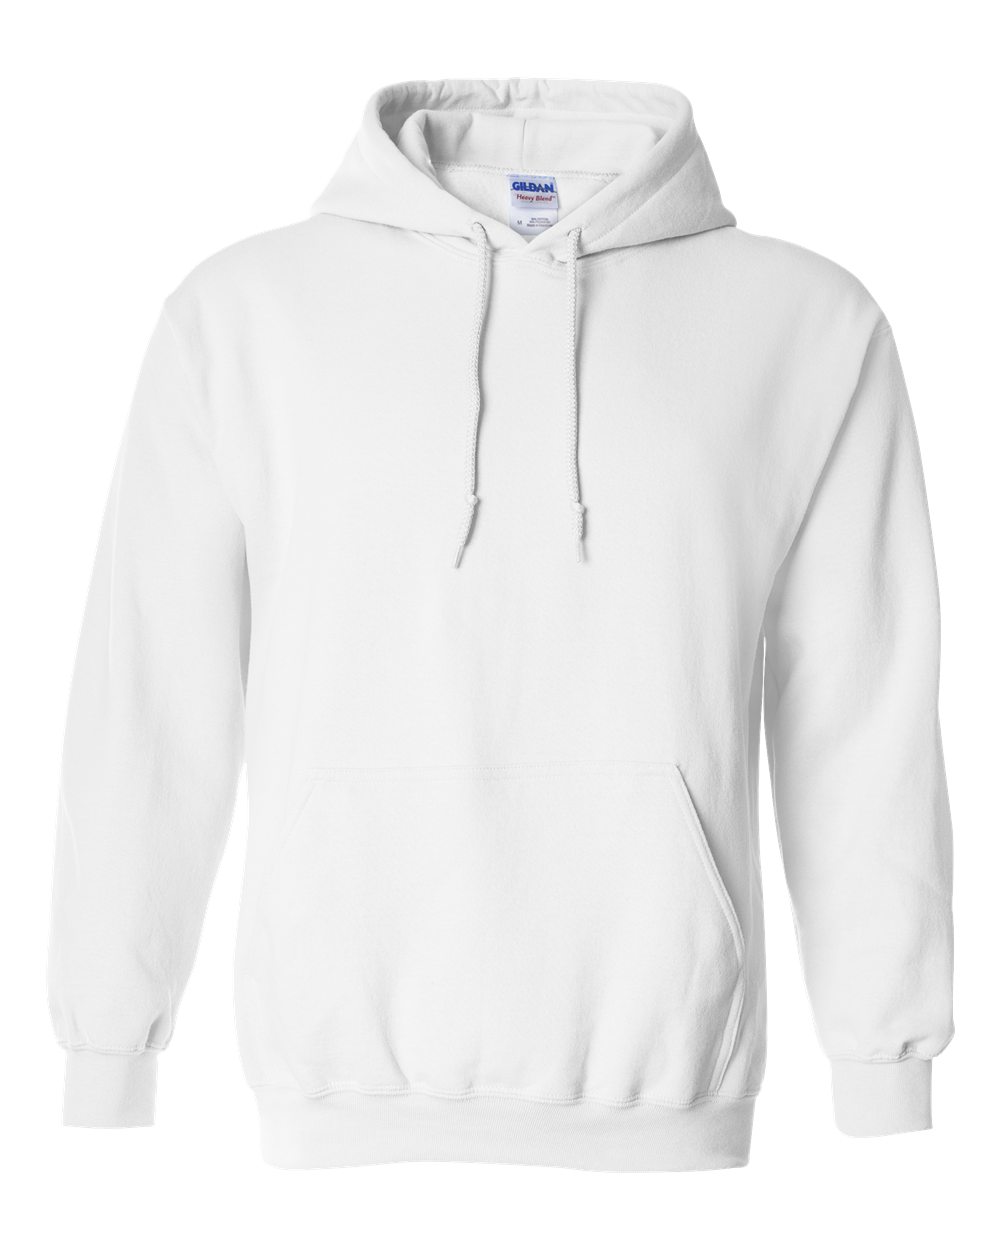 18500 gildan heavyweight blend hoodie